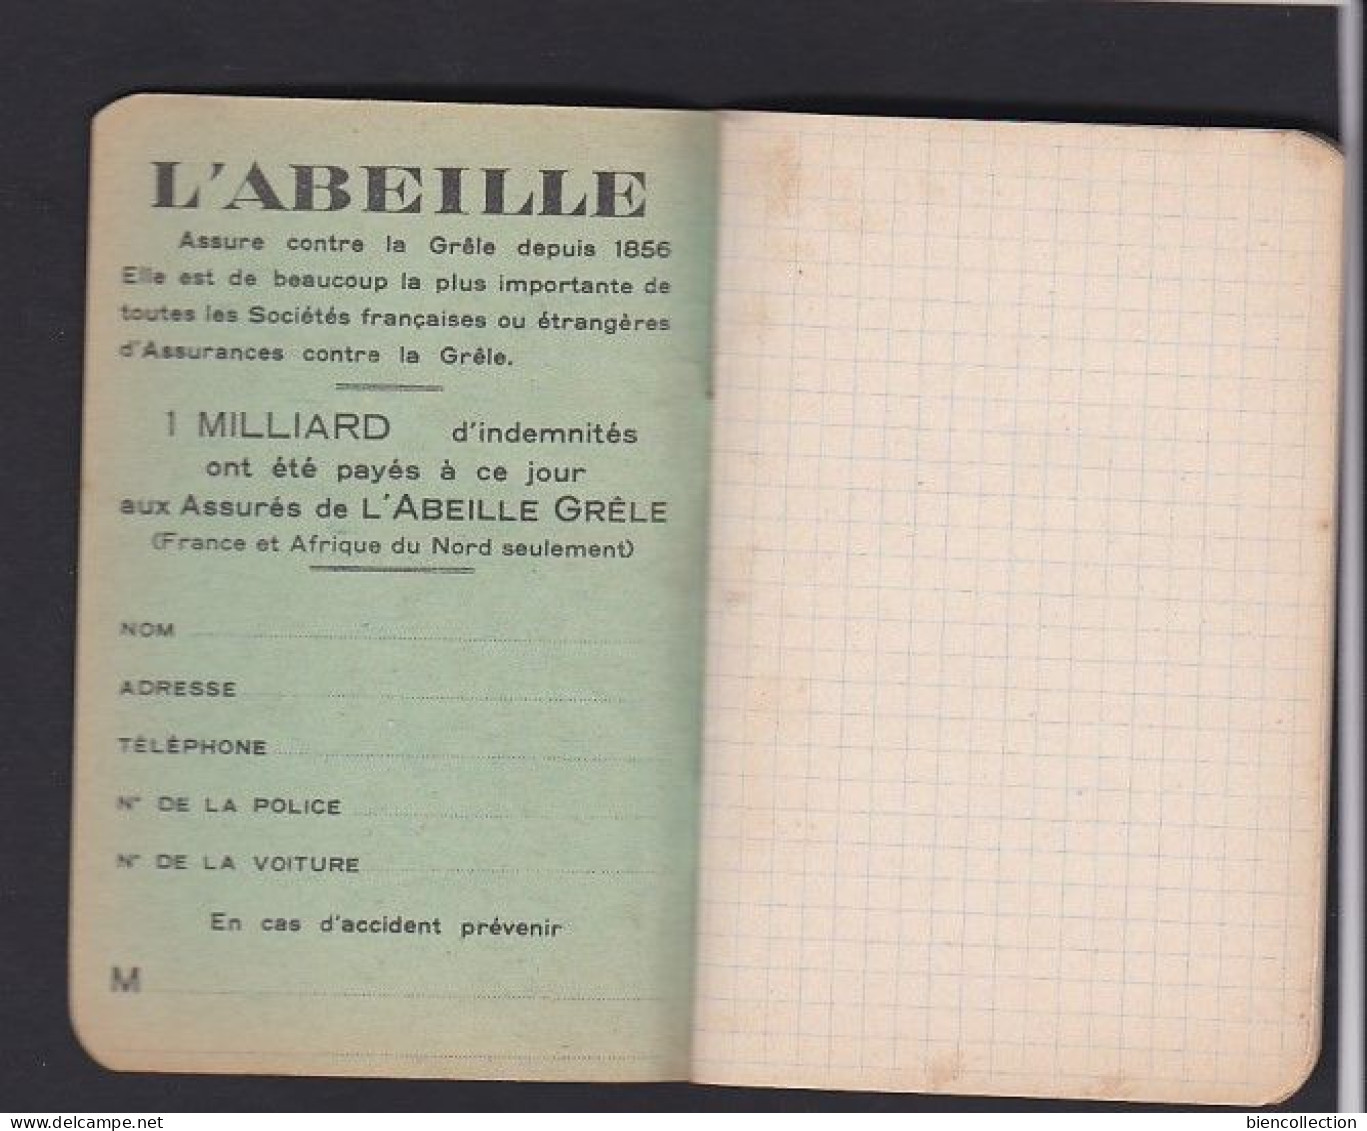 Petit Carnet De Note "publicité L'abeille" ; 40 Pages ; Carnet Neuf Sans Aucunes Inscriptions. 12cm X 8cm - Matériel Et Accessoires